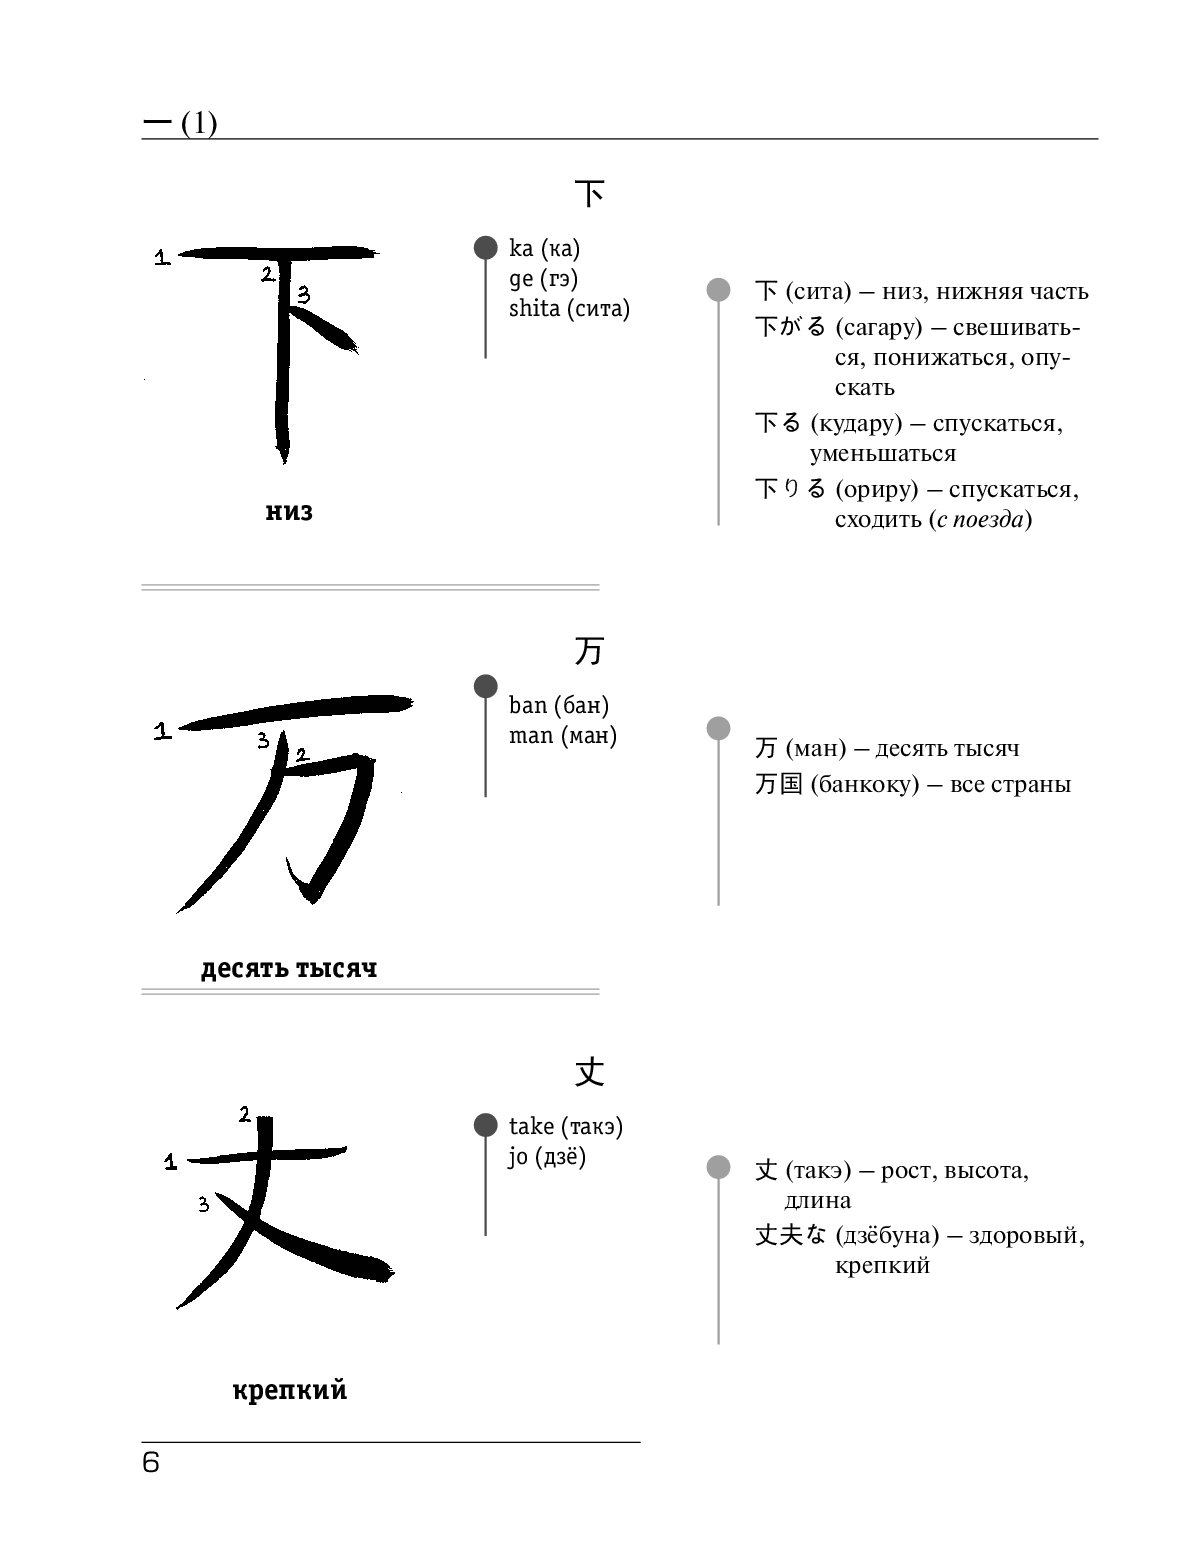 Перевод китайского иероглифа по фото онлайн